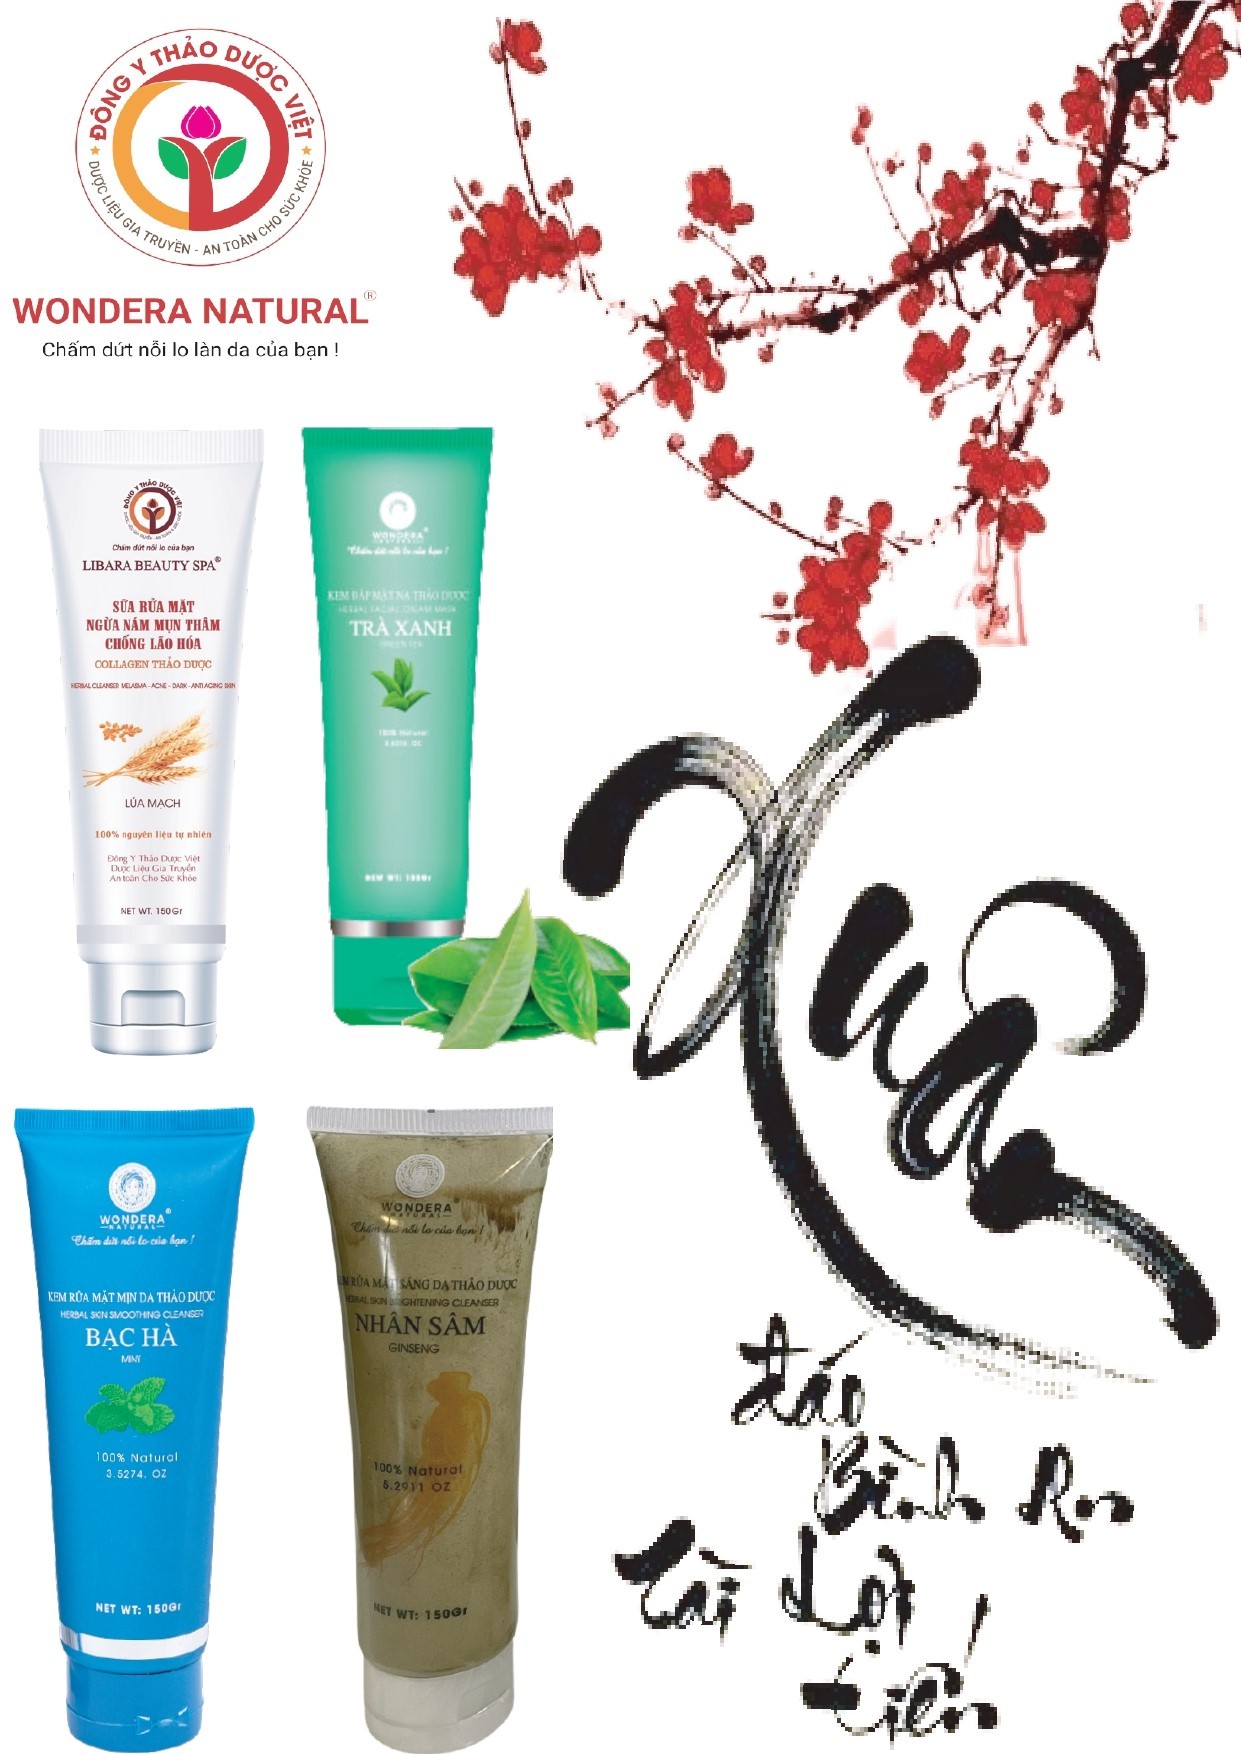 Dược mỹ phẩm Wondera Natural (Đông Y Thảo Dược Việt)  - Thương hiệu mỹ phẩm an toàn bí quyết của sự xinh đẹp, trẻ trung và thành đạt